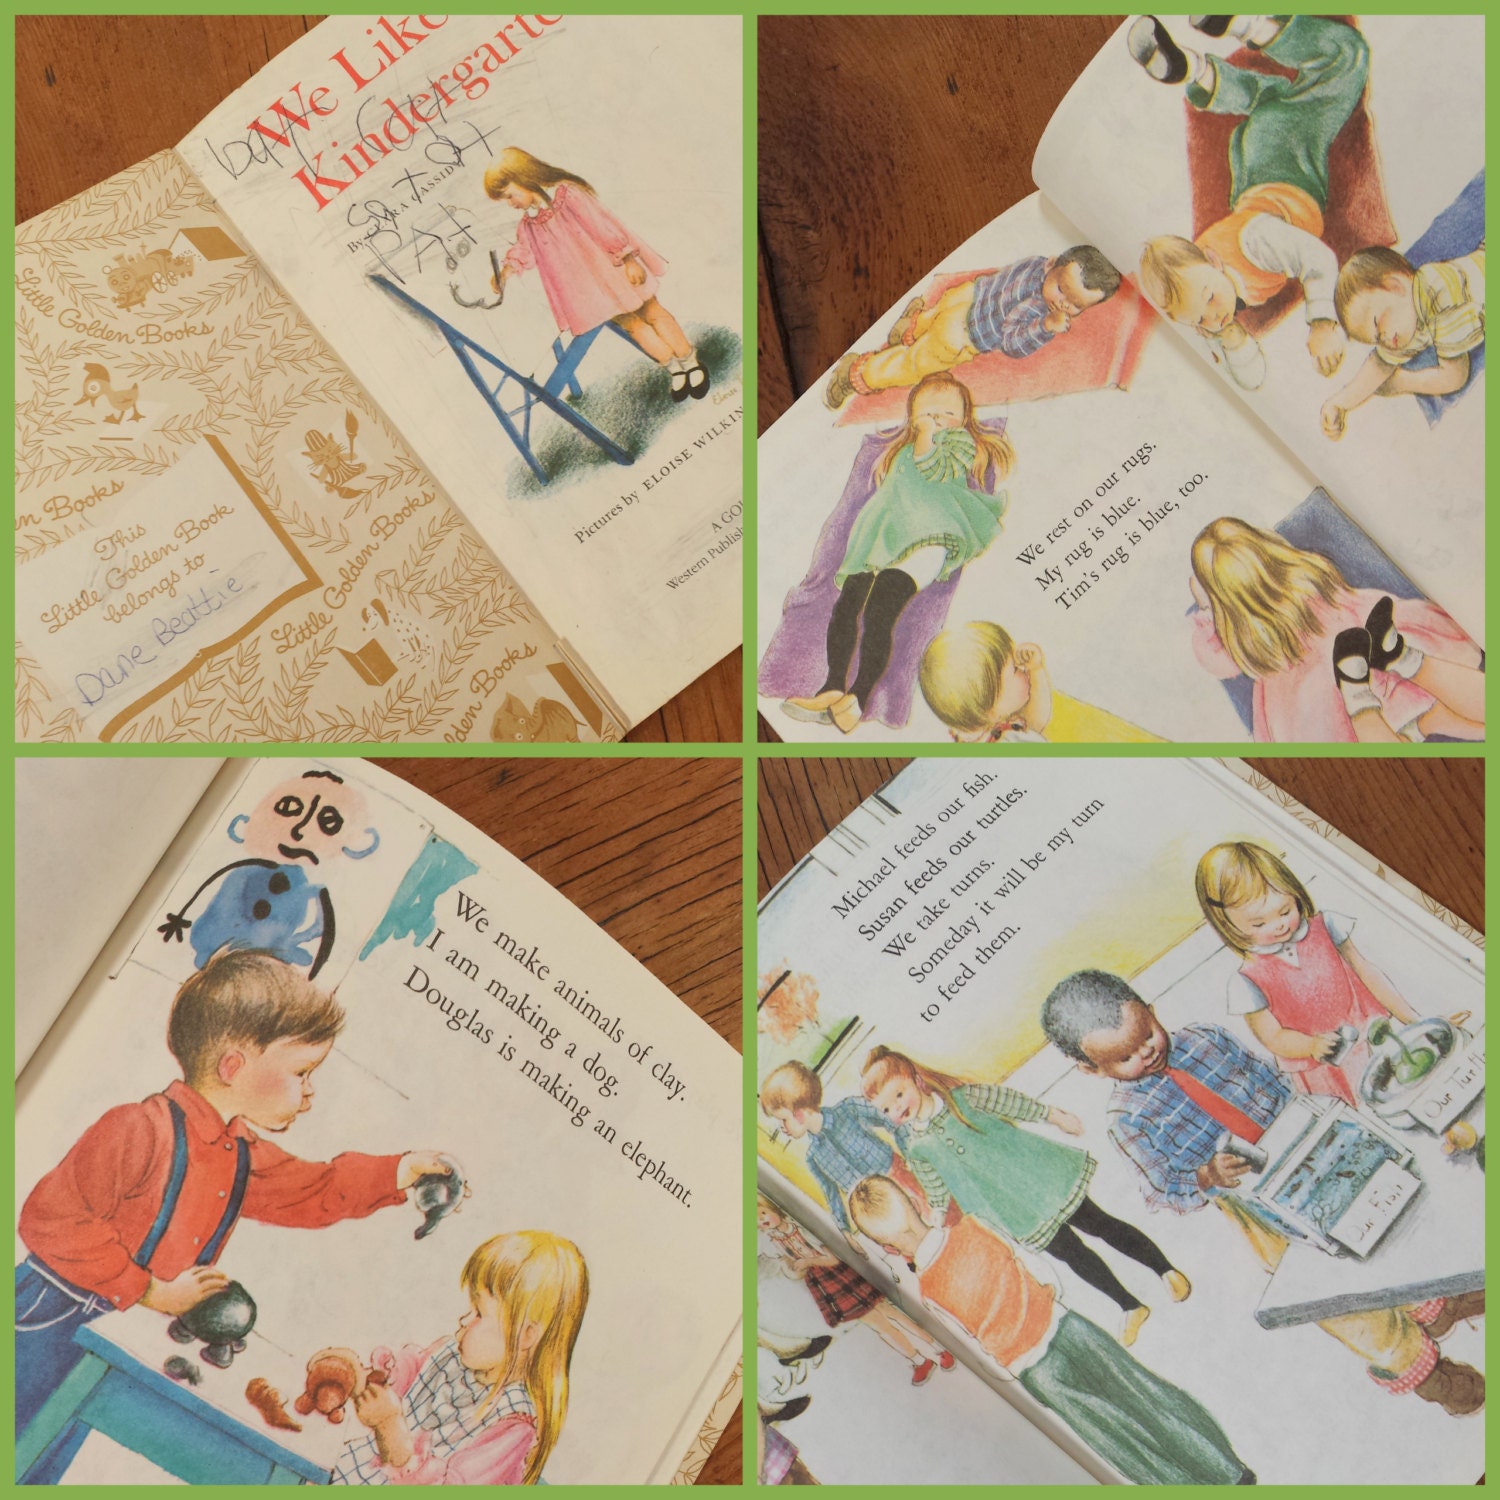 little golden book we like kindergarten reading level